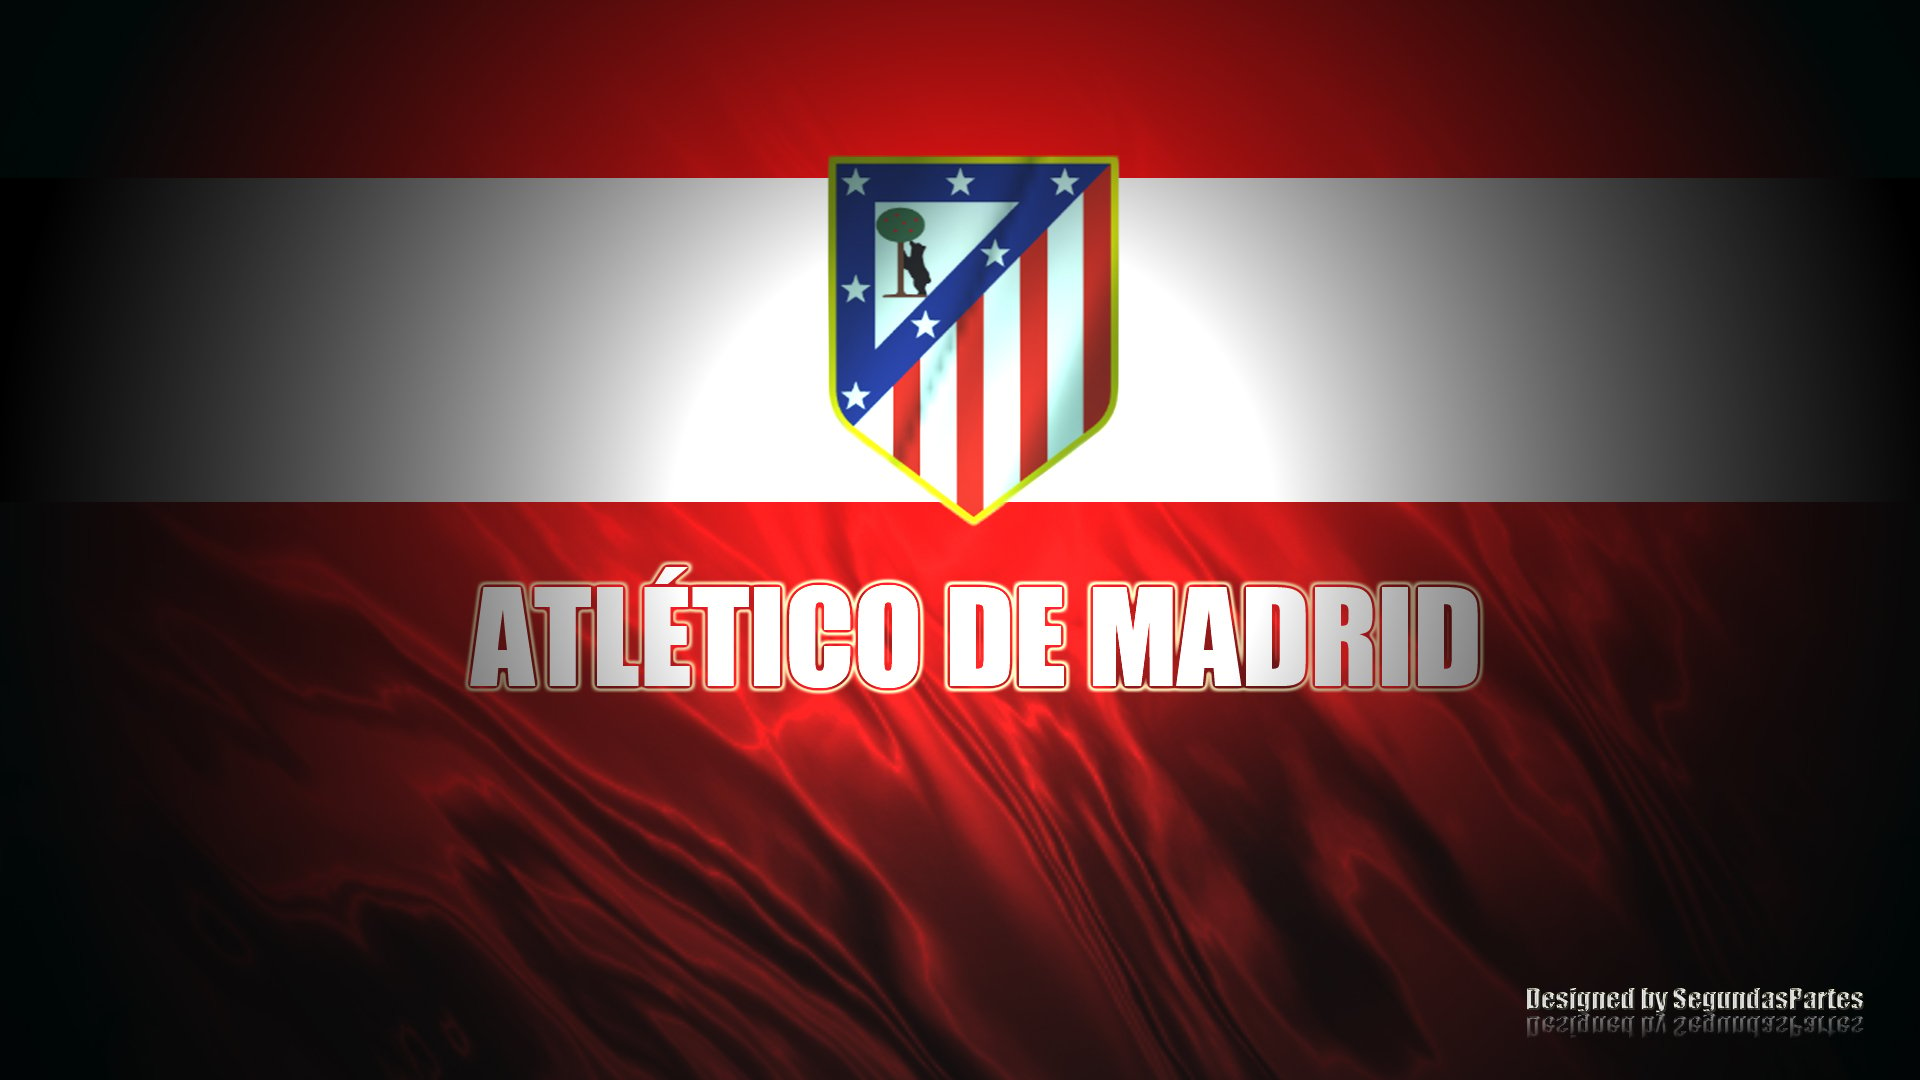 Atletico de Madrid Wallpaper - WallpaperSafari